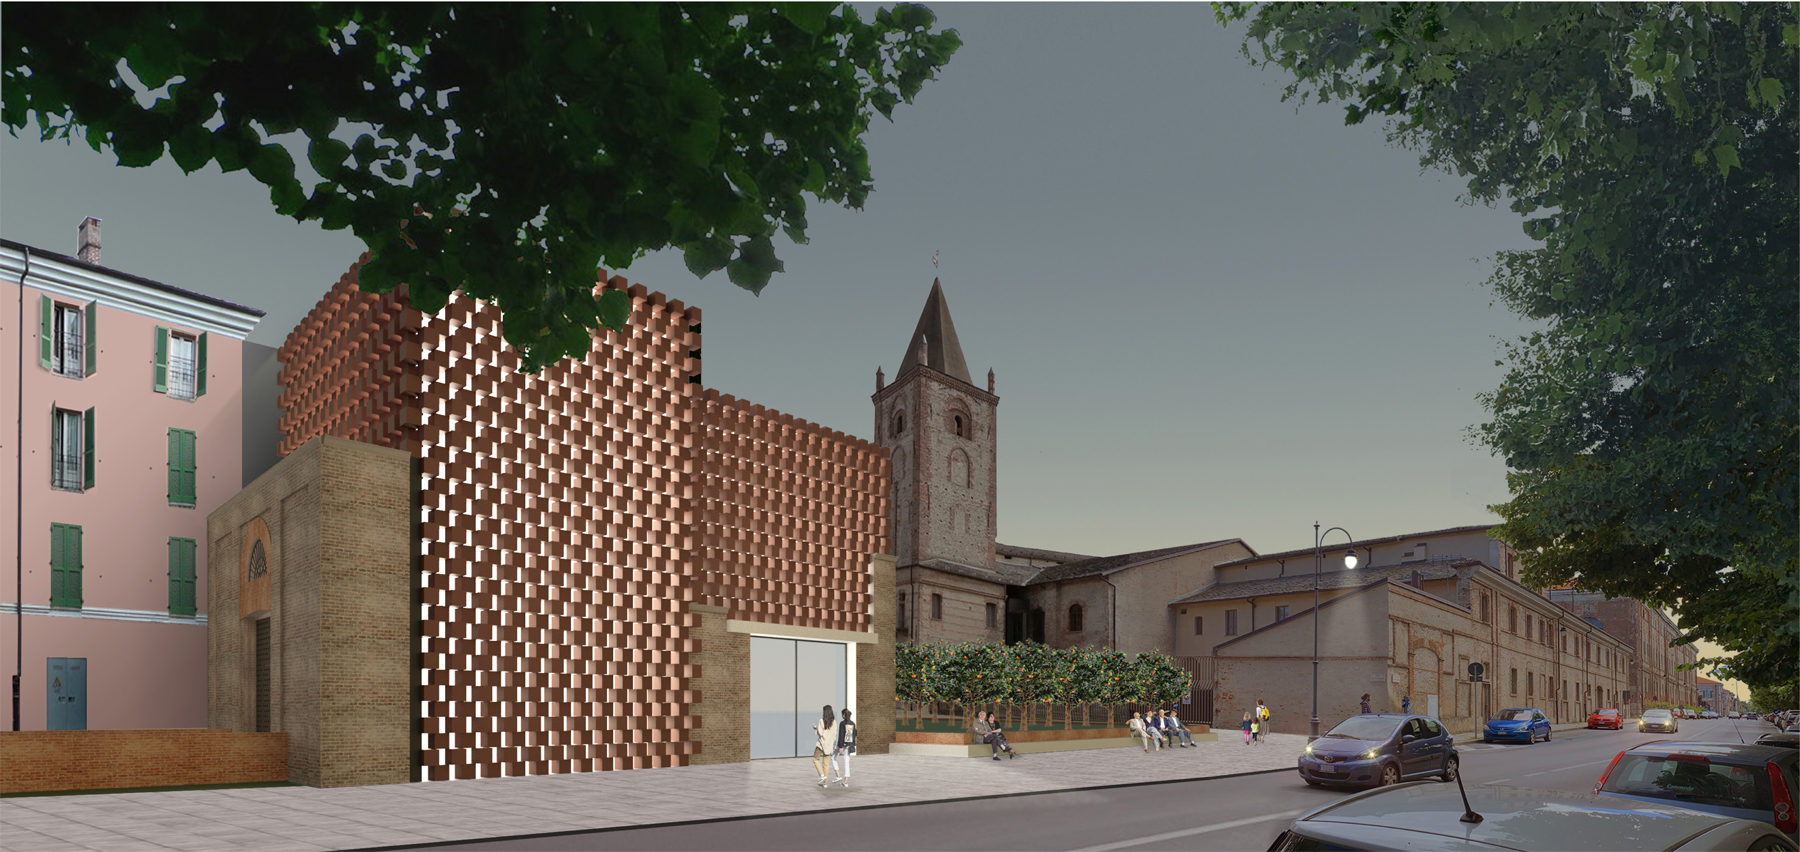 Re-design of the ex”Frigorifero Militare” Building into Exhibition Spaces, Auditorium and Cafeteria, Cuneo Italy